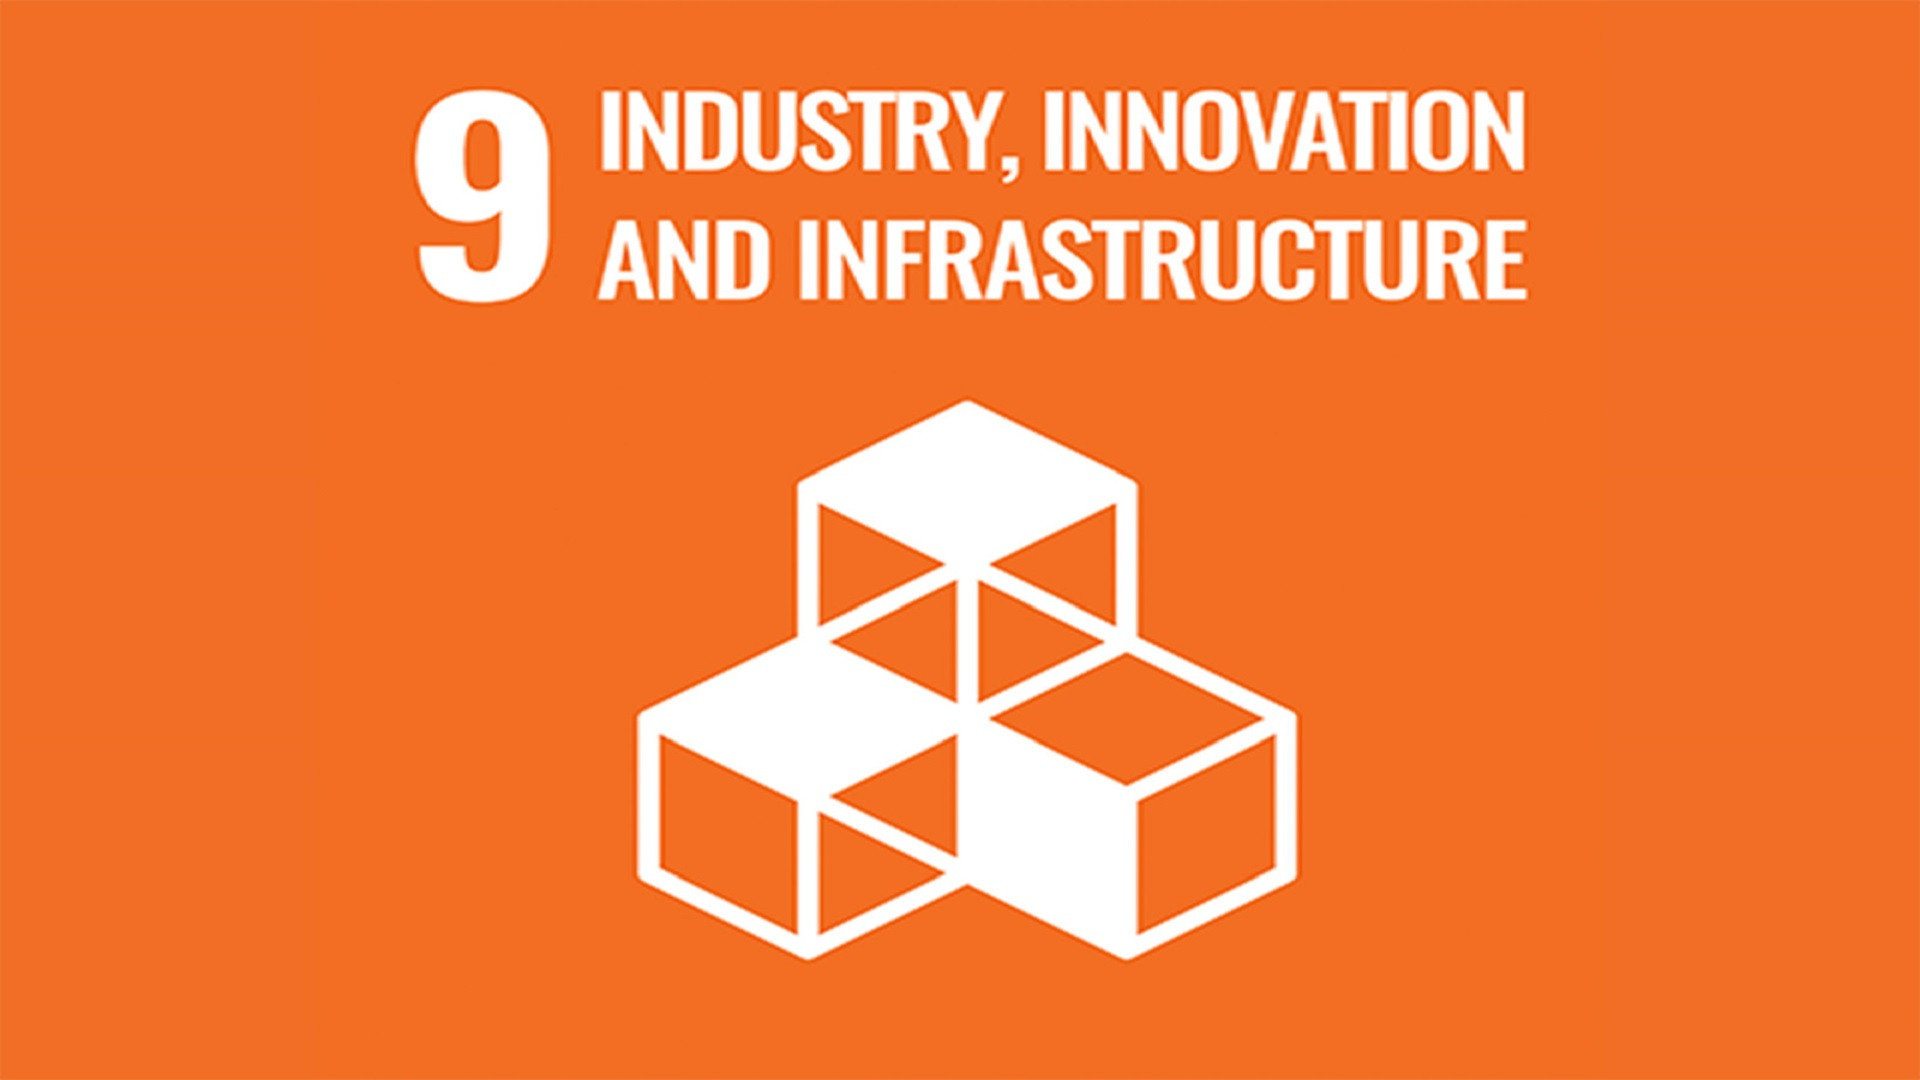 聯合國永續發展目標 9: 工業、創新與基礎設施